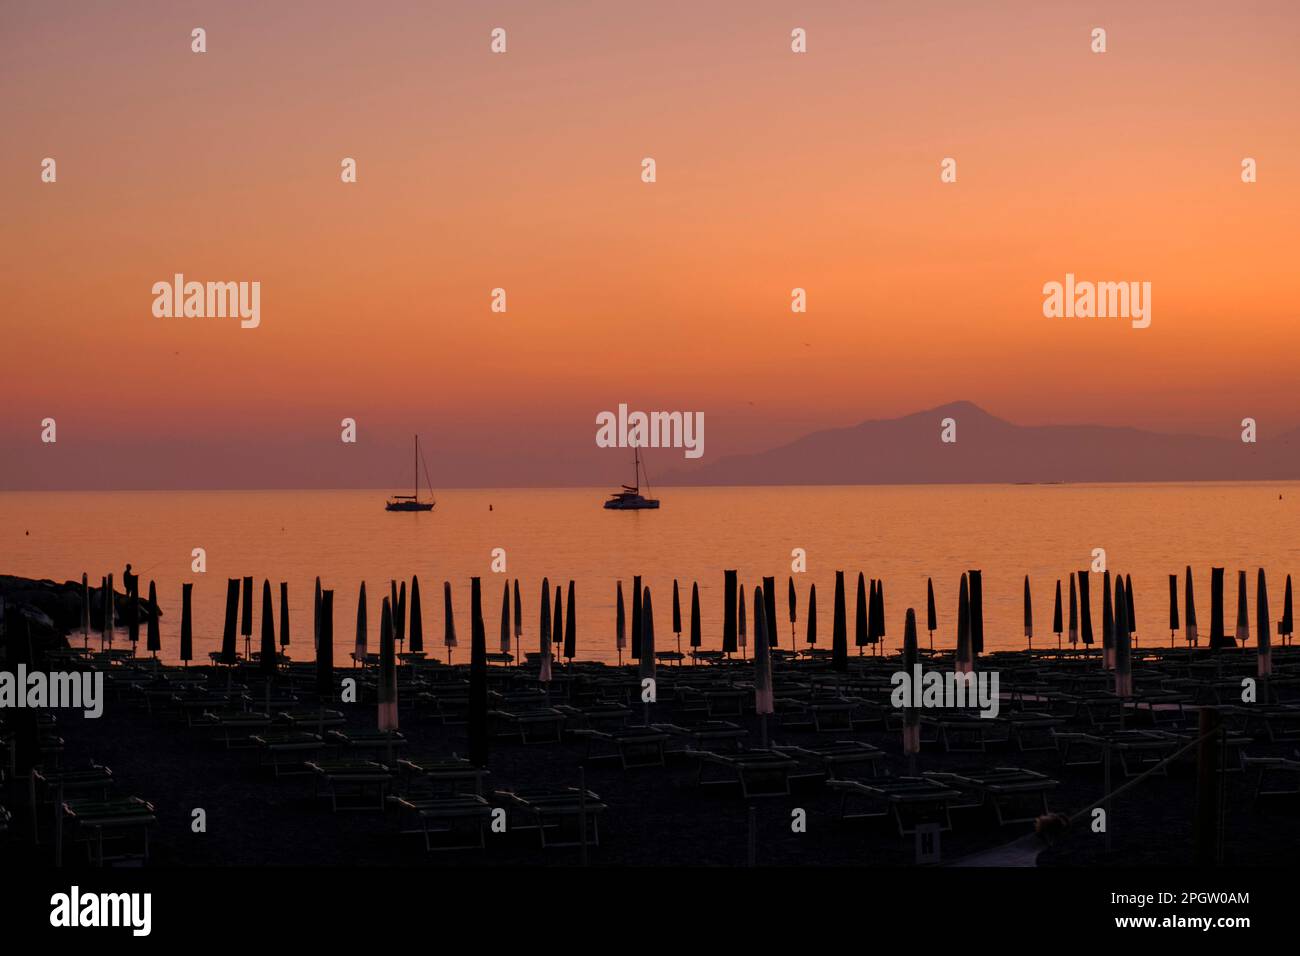 Deux navires dans la mer de coucher de soleil, les montagnes, et le soleil lit sur la plage à Sestri Levante, Ligurie, Italie. Arrière-plan d'été Banque D'Images